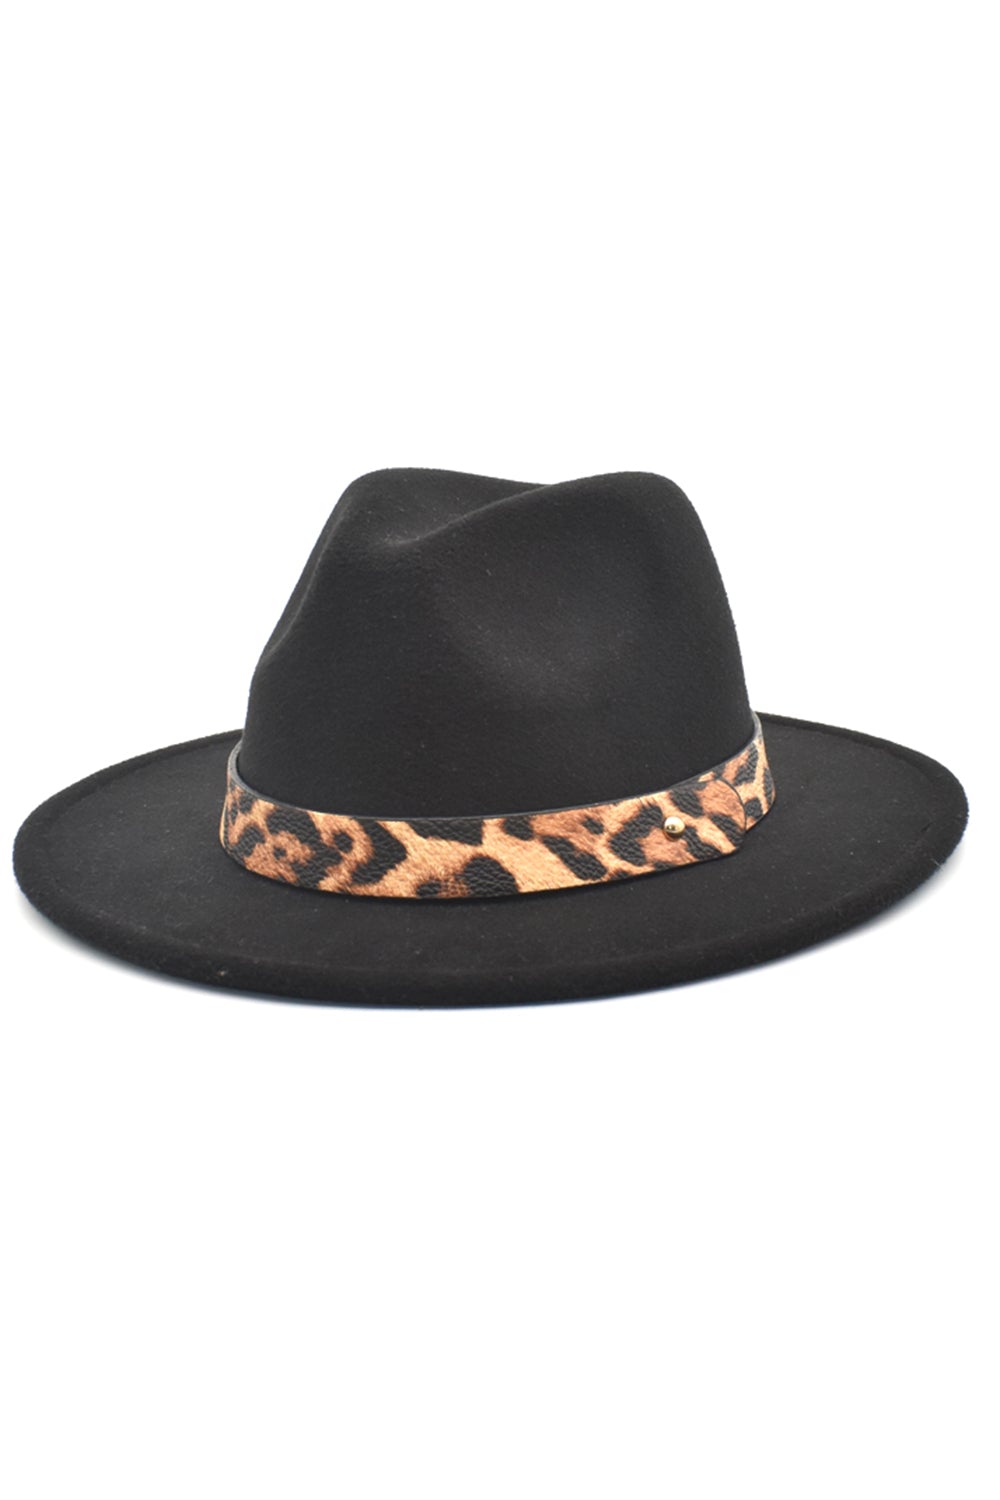 Black Leopard Printed Vintage 1920s Bowler Hat